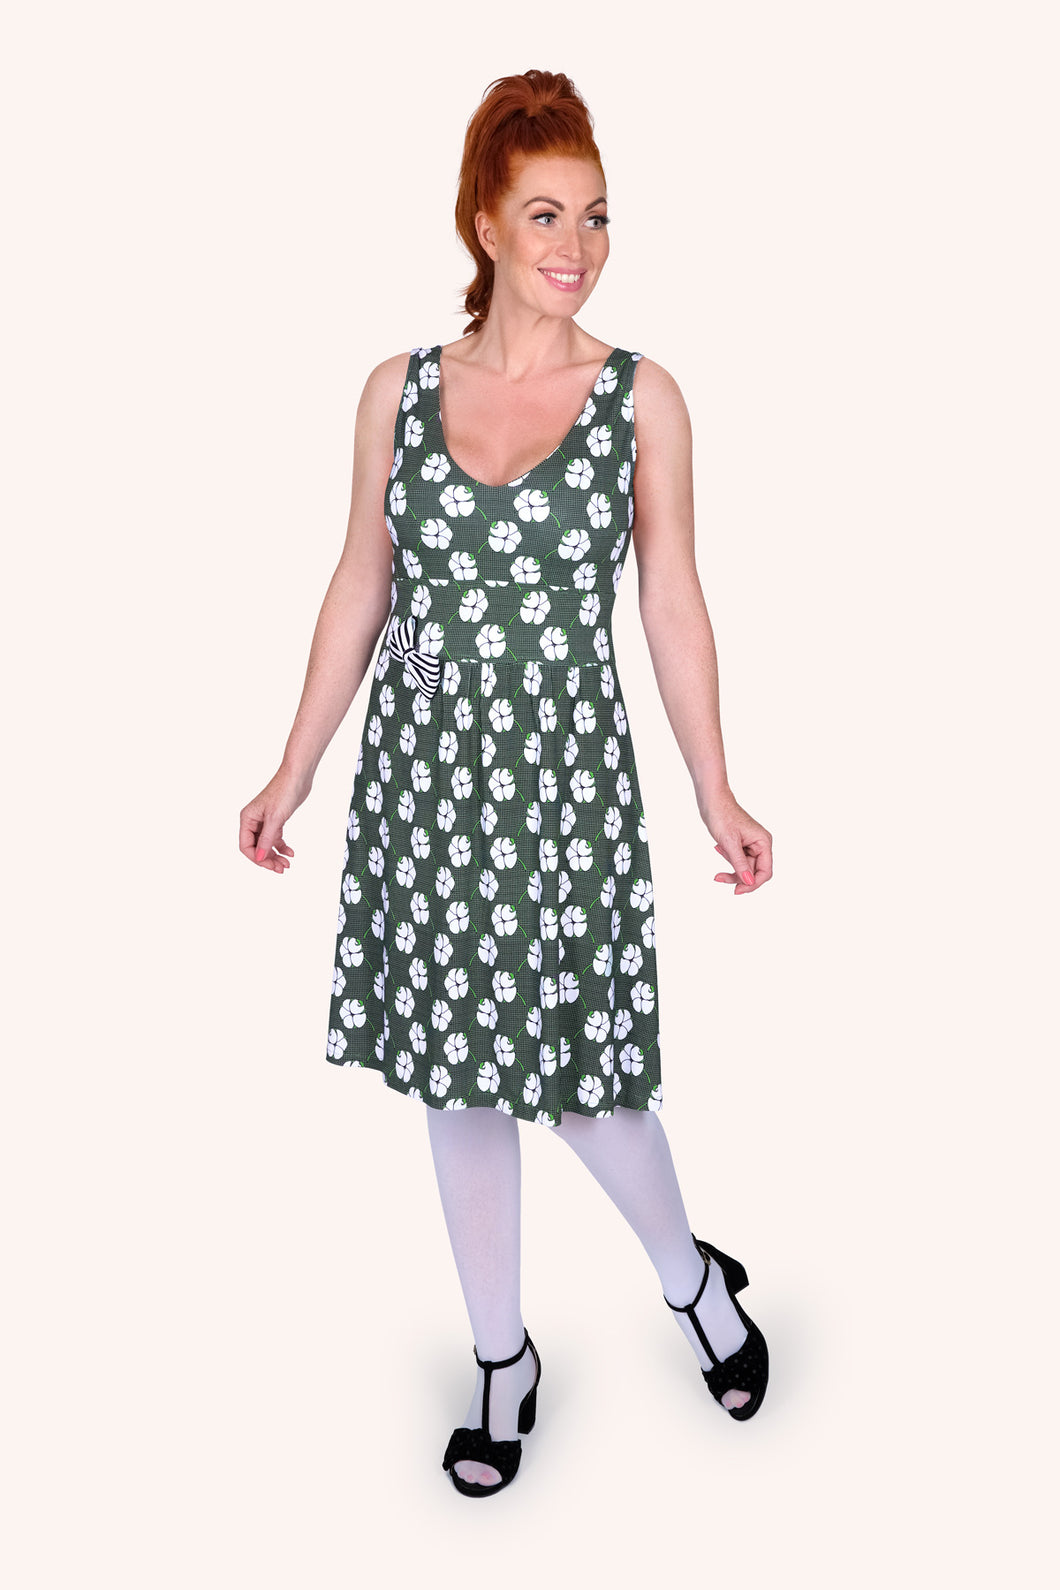 Kjøp søt sommerkjole Dotty Dearest fra Margot Mikkelsen hos fashionintheforest på nett